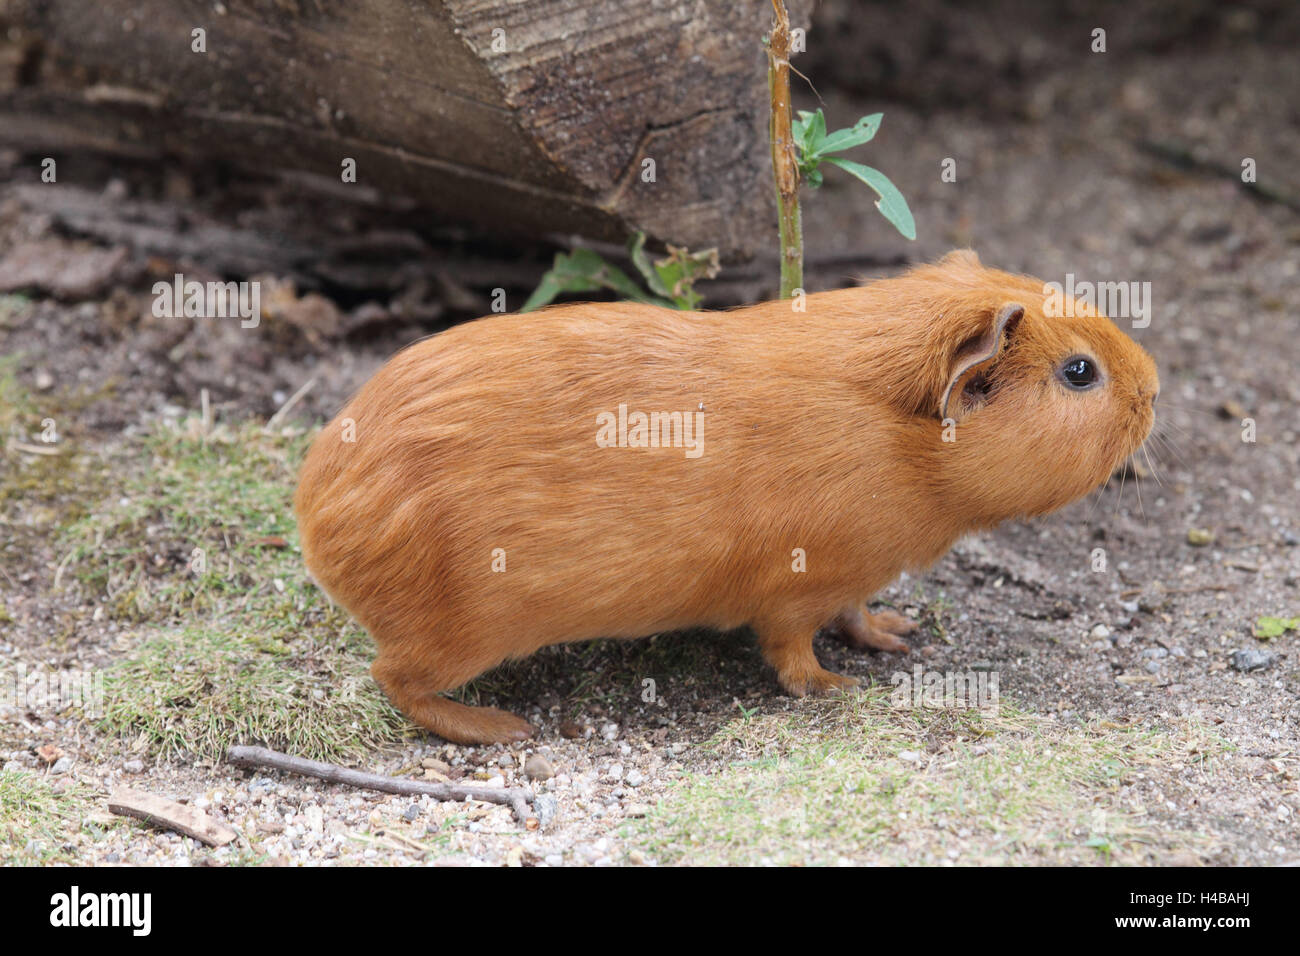 Guinea pig, Cavia aperea Stock Photo